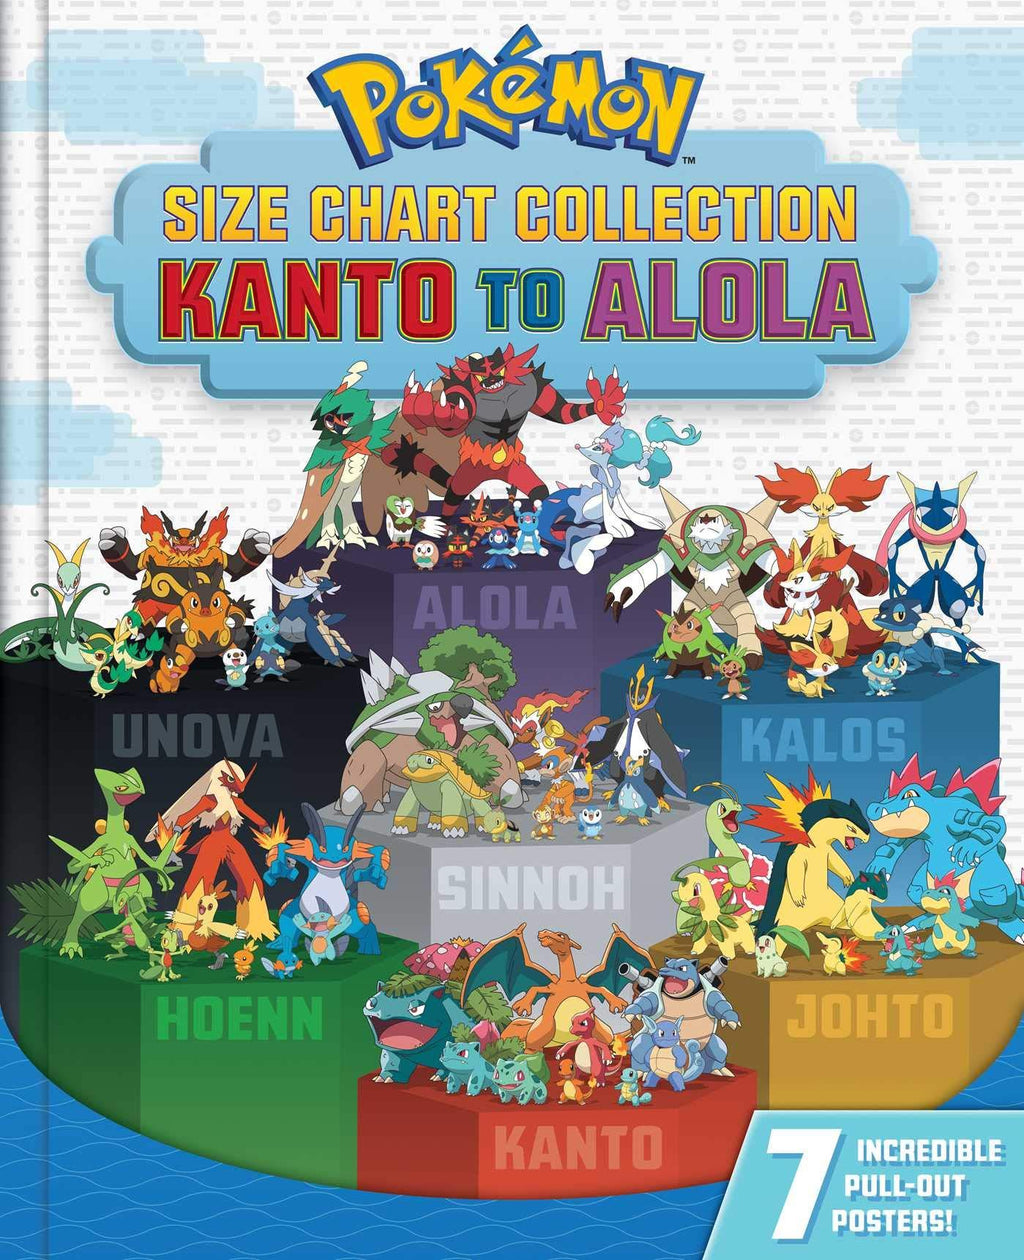 Pokemon Size Chart Collection Kanto to Alola - The Comic Warehouse